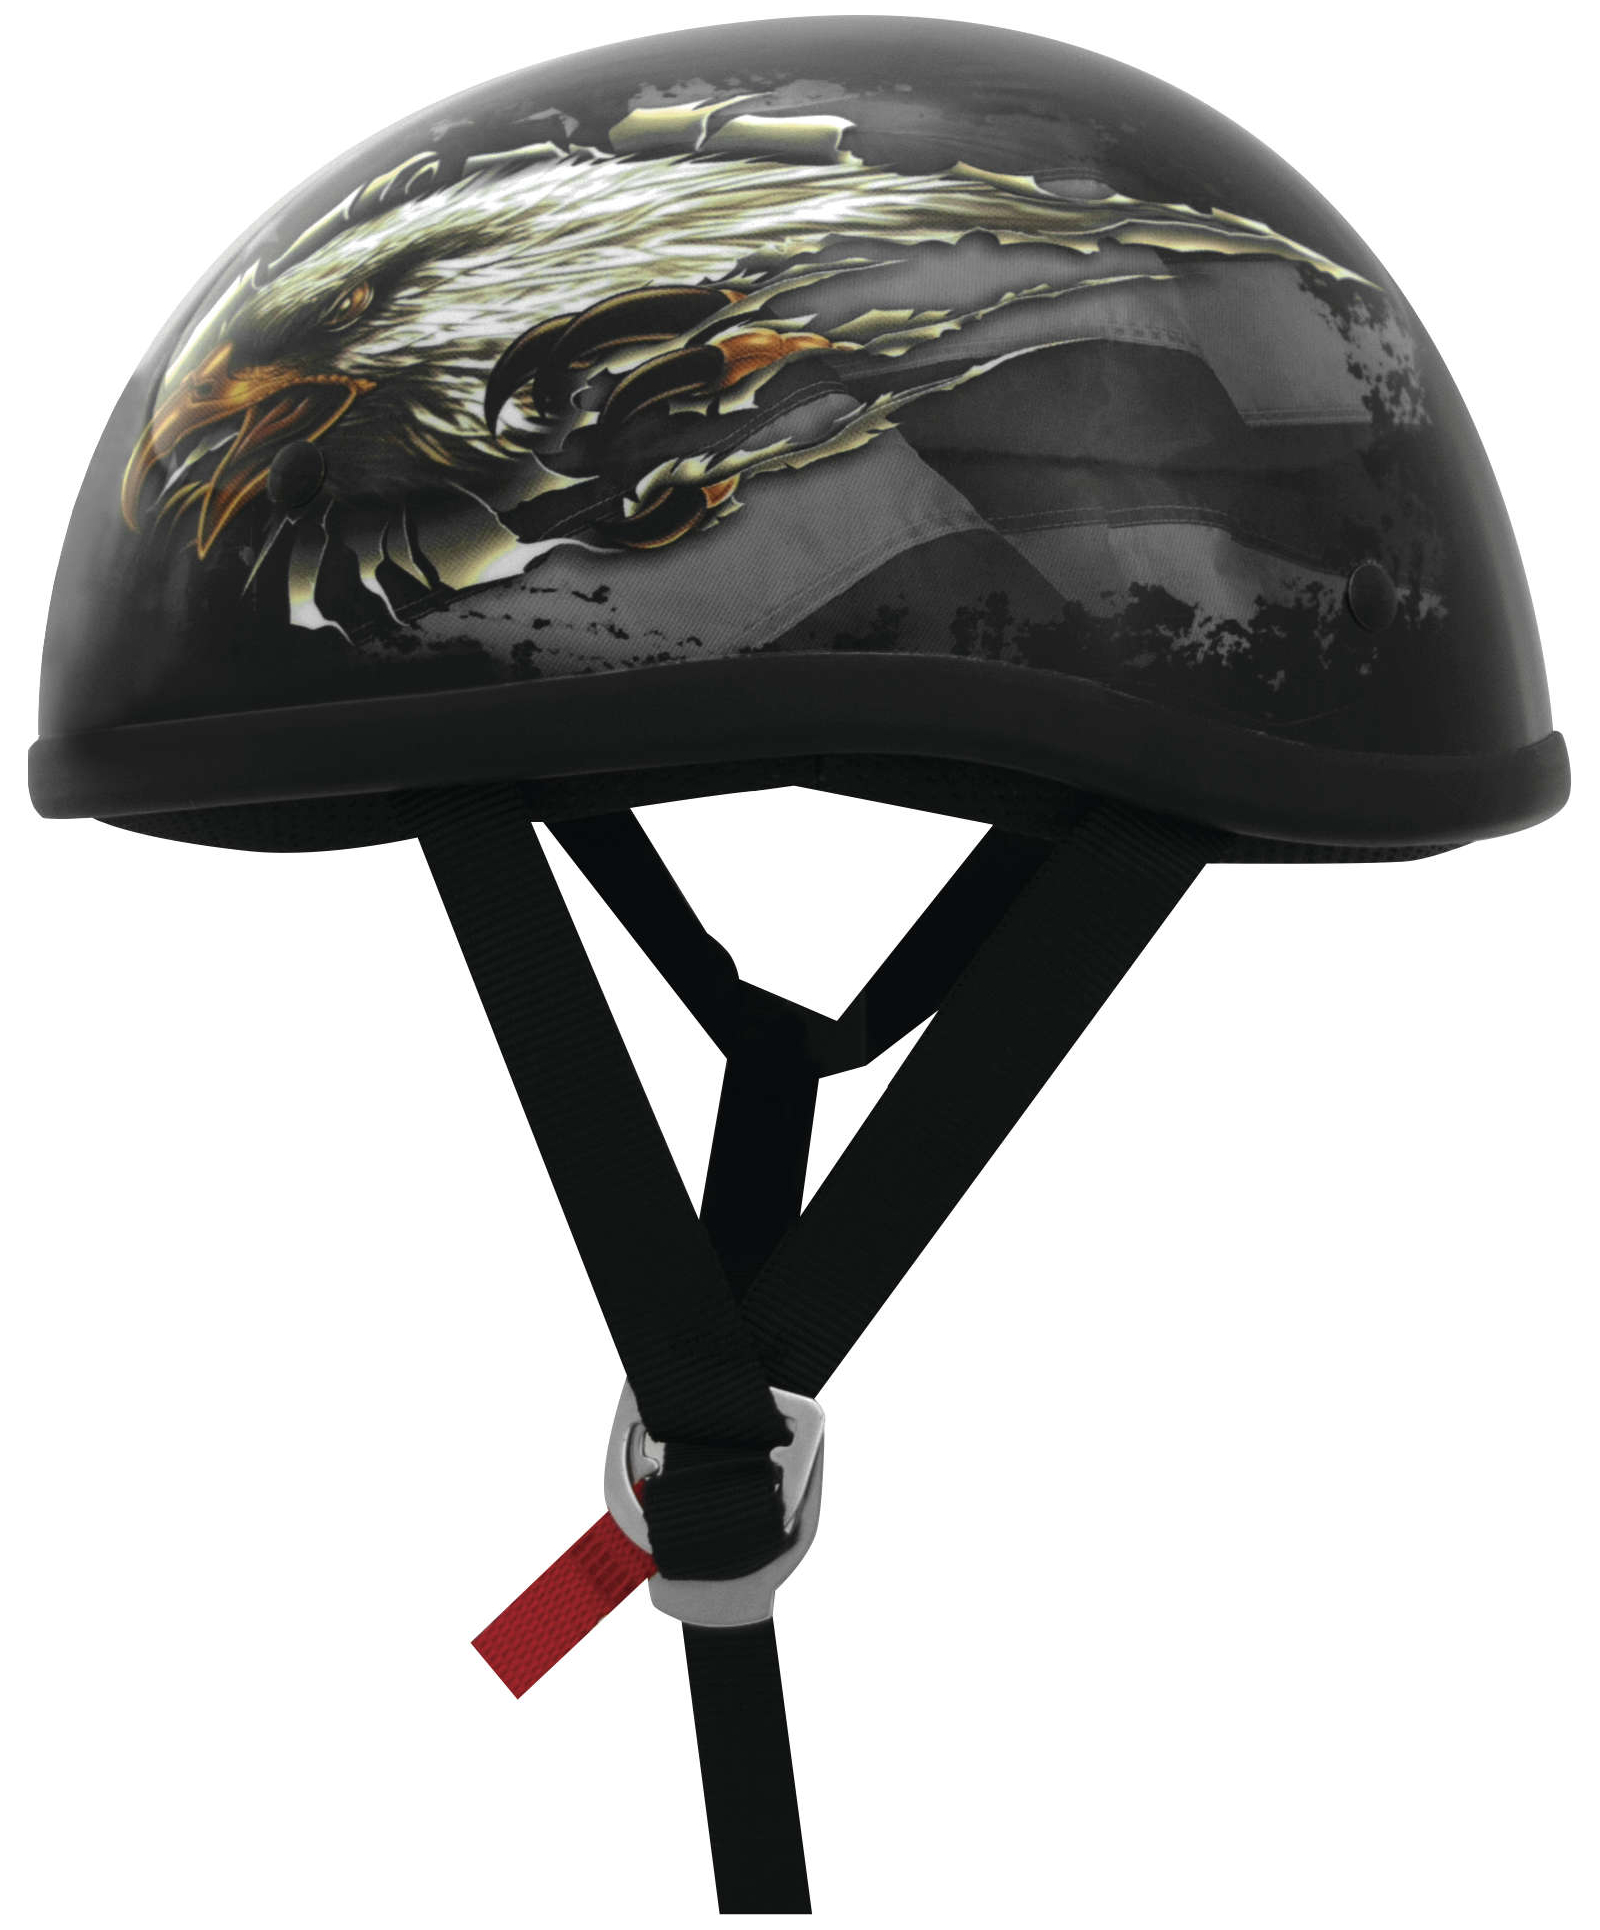 skid lid bicycle helmet